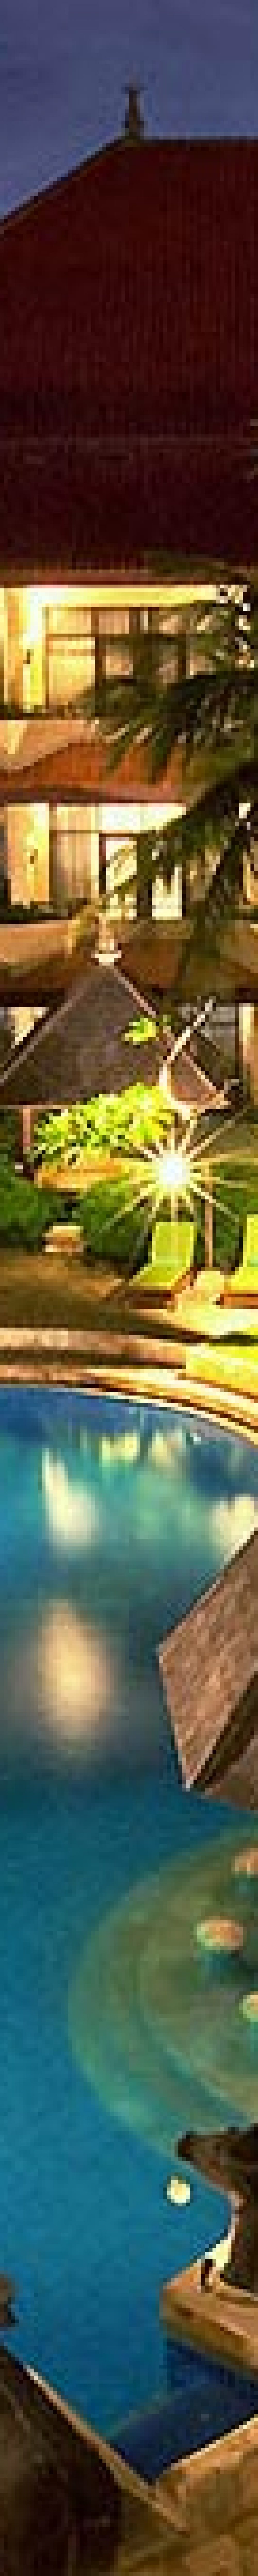 tanjung benoa bali, tanjung benoa beach resort, swimming pool, tanjung benoa resort swimming pool